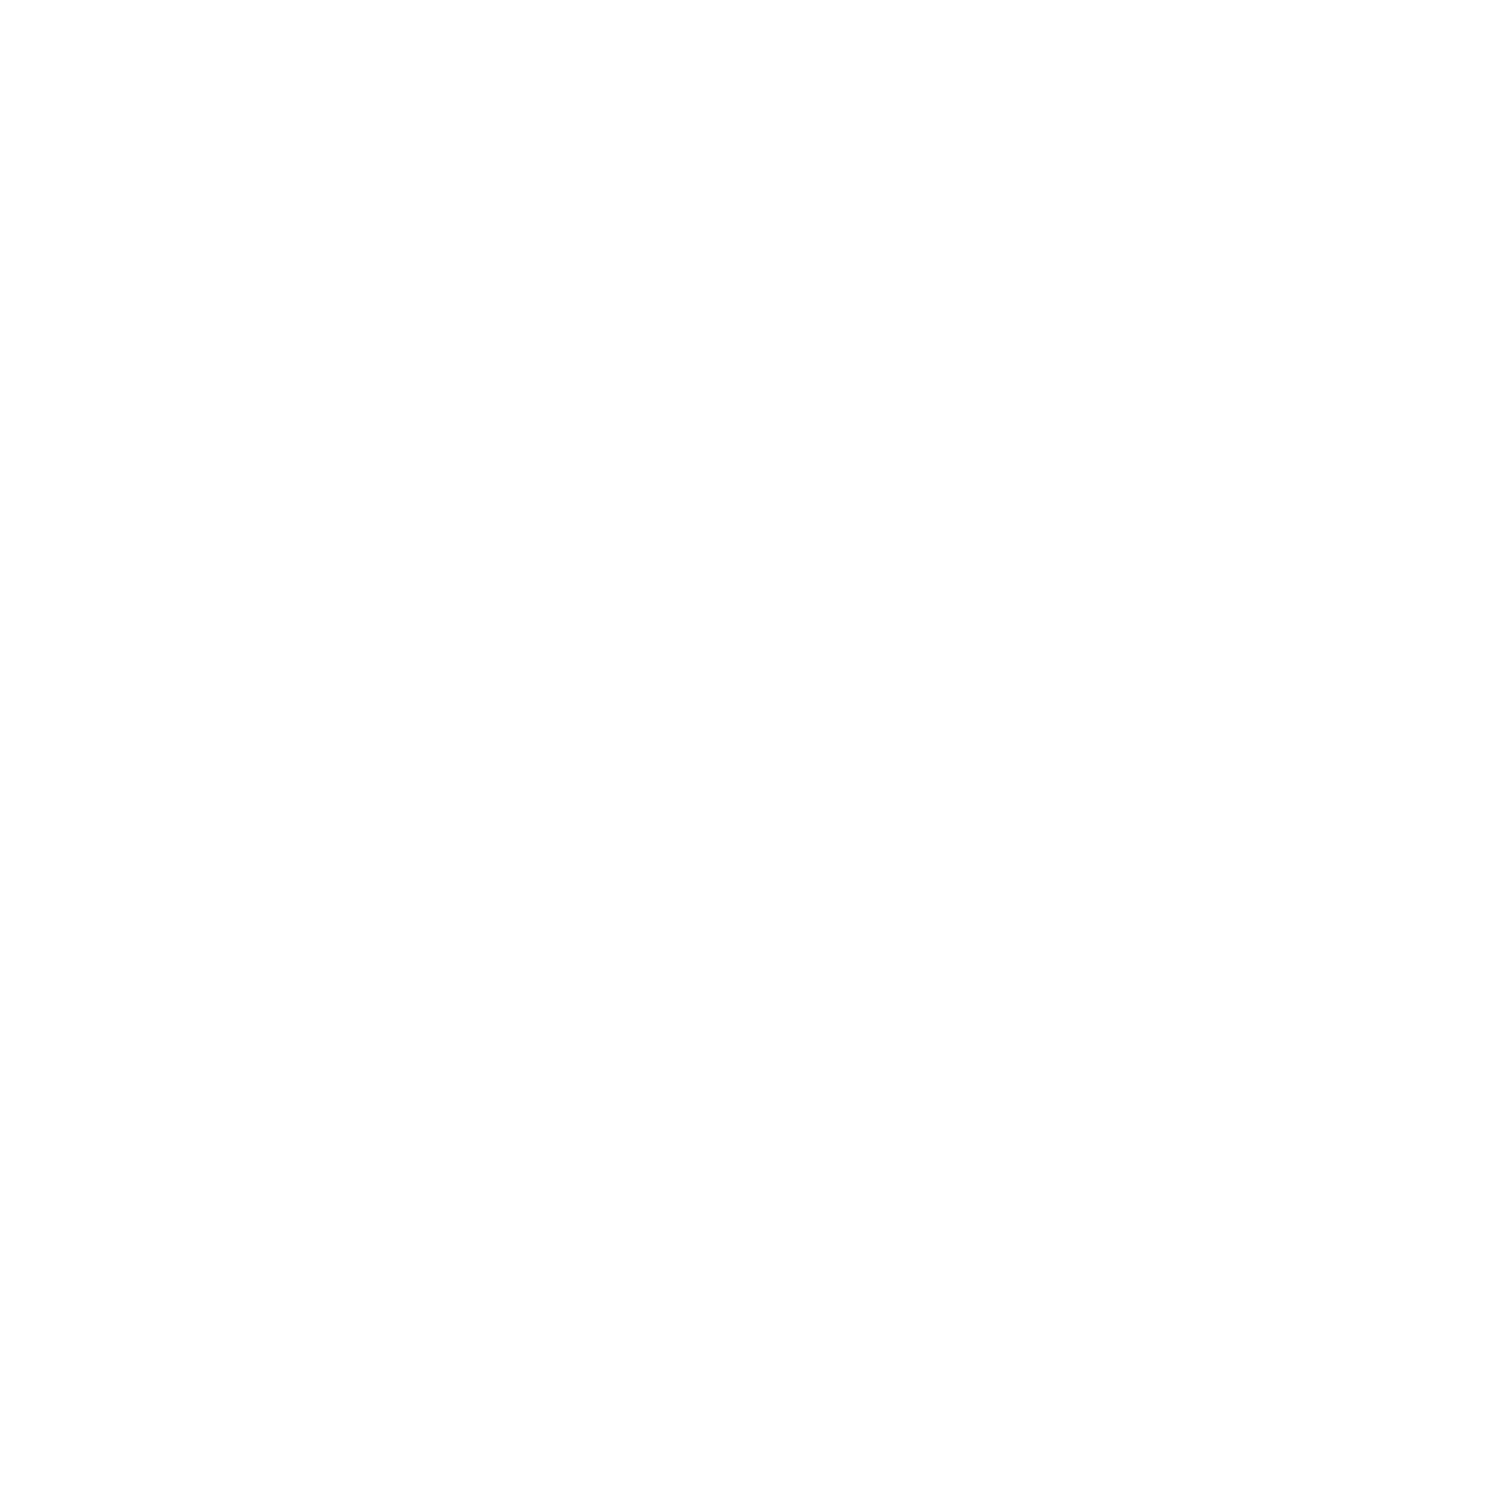 DeAnna Kweens Author